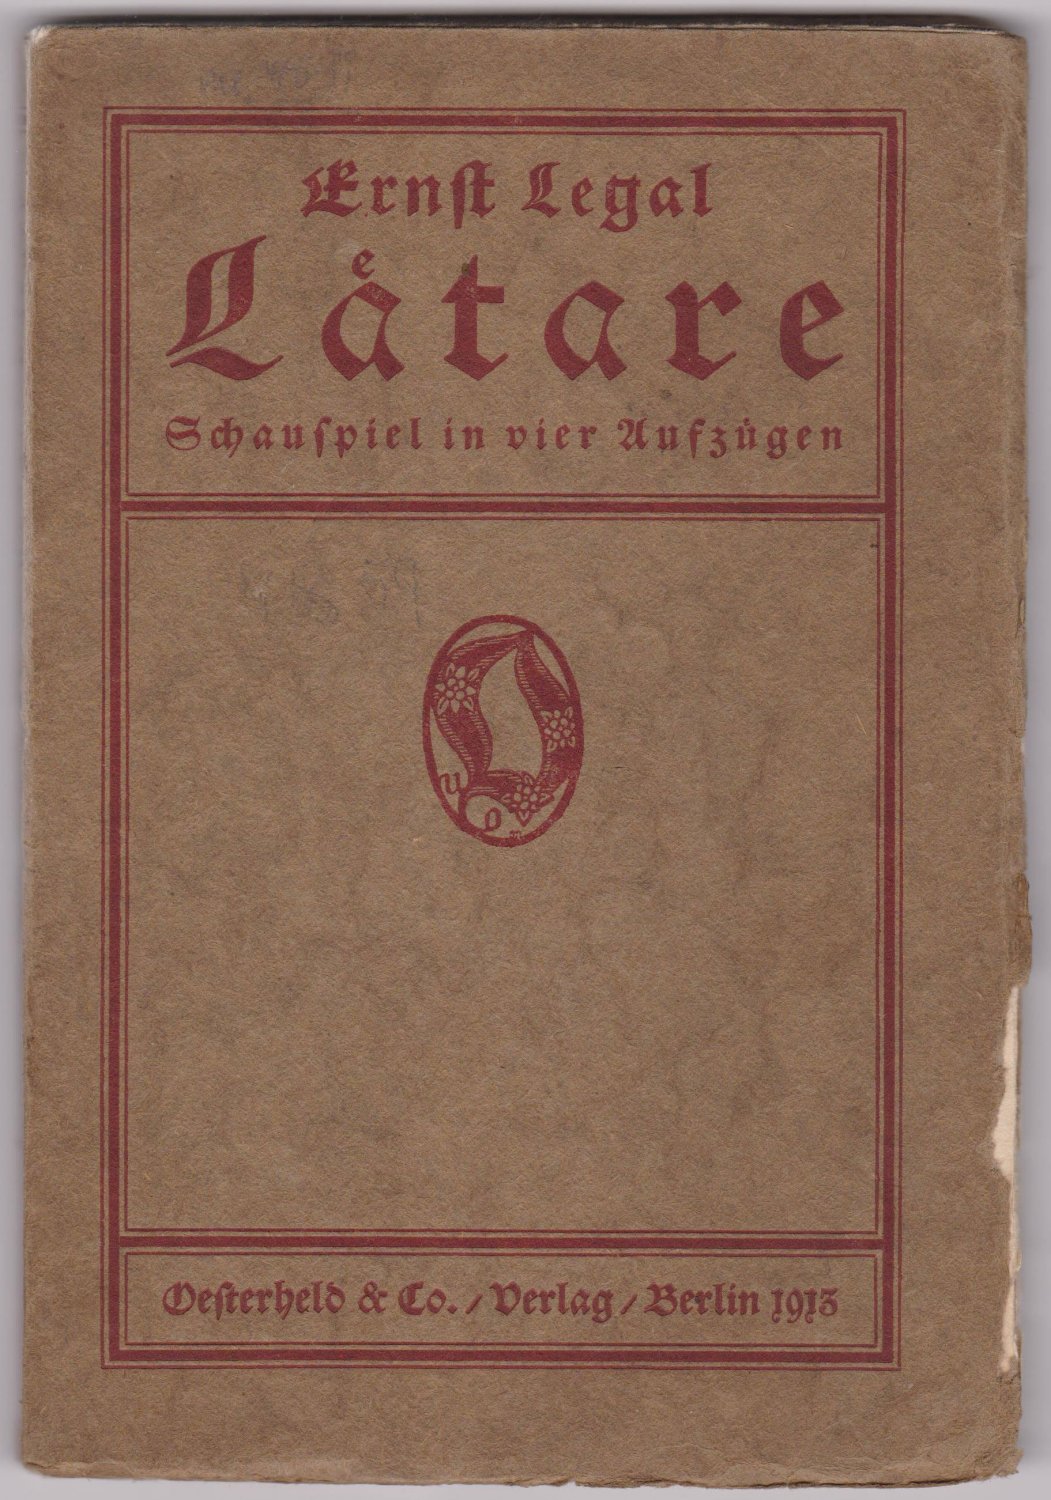 LEGAL, Ernst:  Laetare. Schauspiel in vier Aufzügen. (Erstausgabe!). 